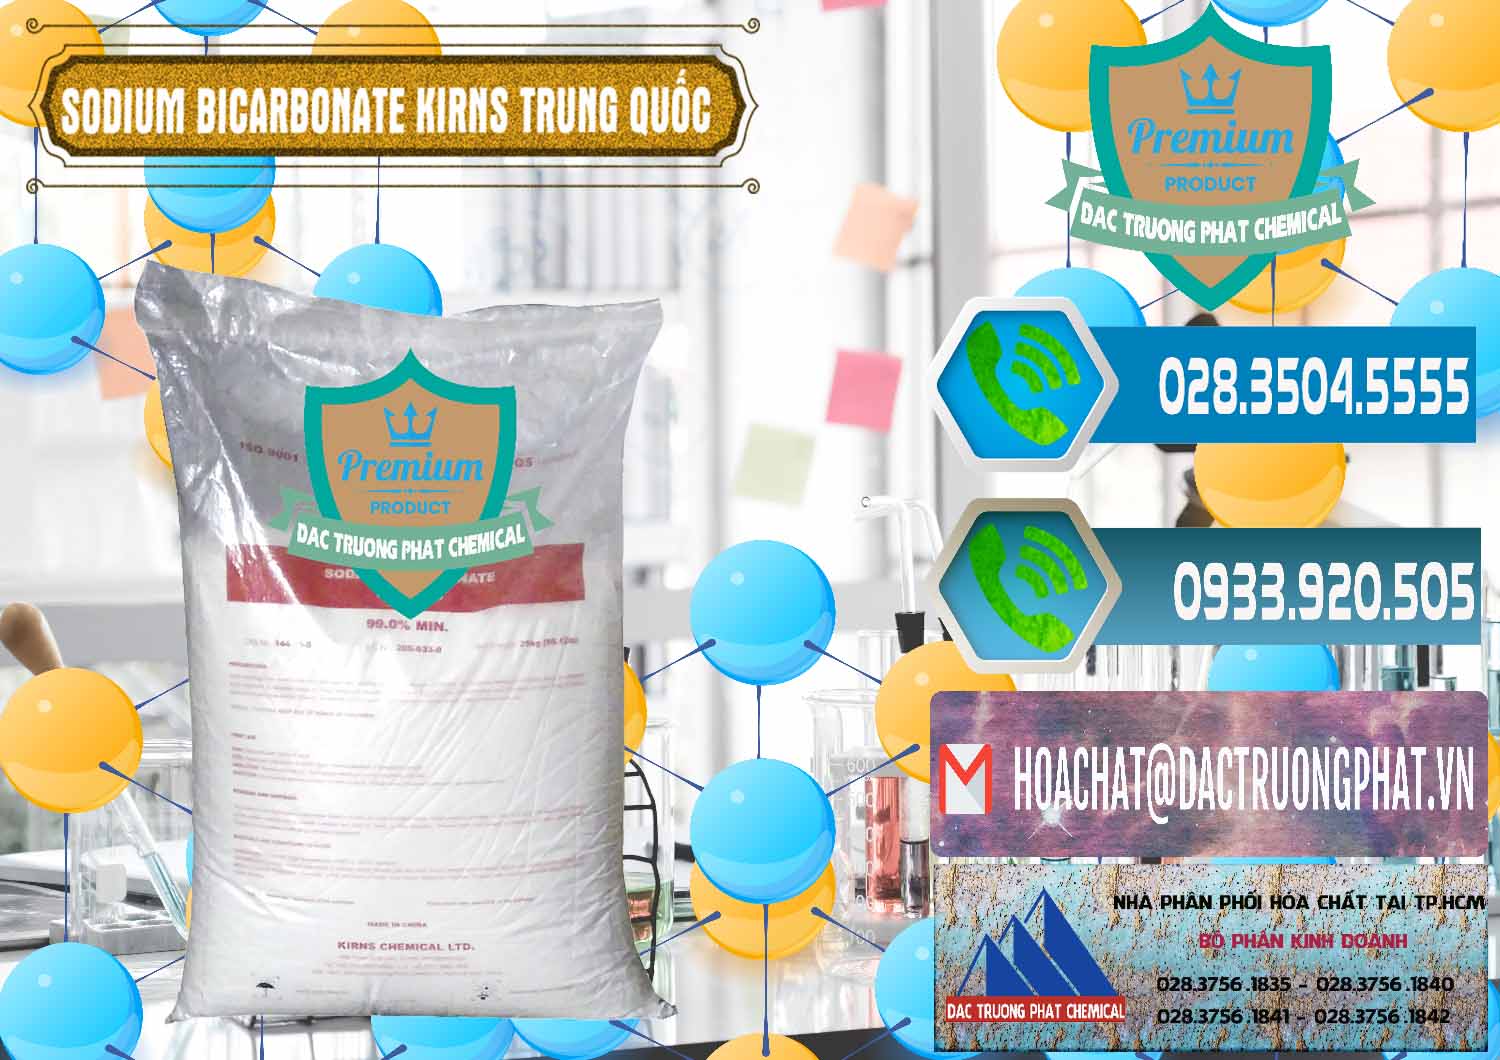 Cty bán & cung ứng Sodium Bicarbonate – Bicar NaHCO3 Food Grade Kirns Trung Quốc - 0217 - Cty cung cấp & bán hóa chất tại TP.HCM - congtyhoachat.net